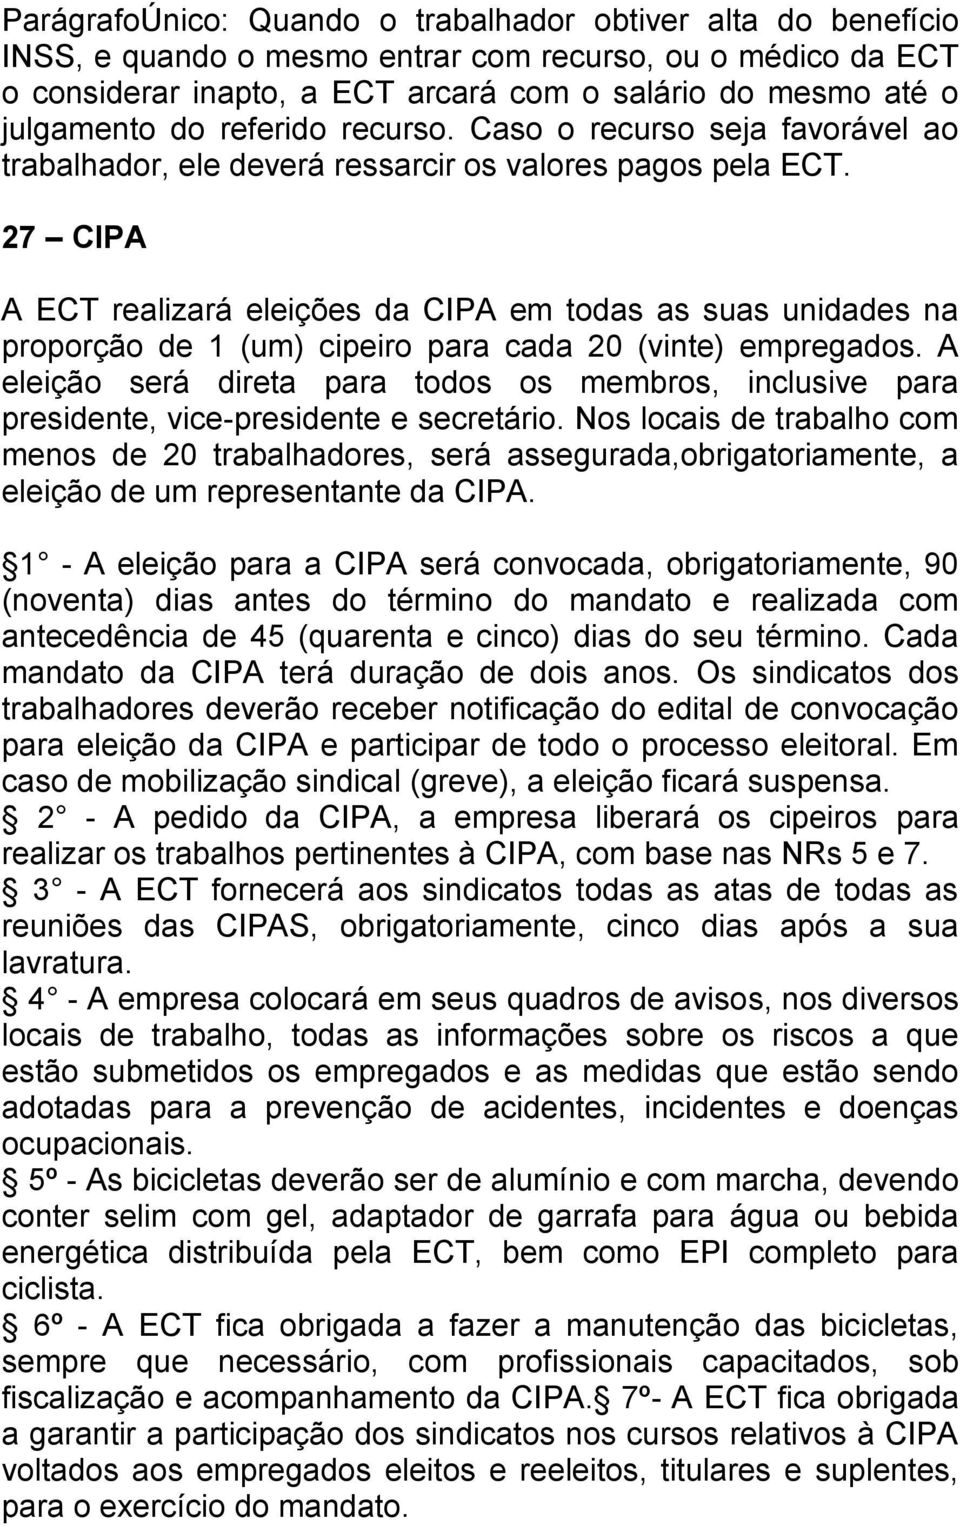 27 CIPA A ECT realizará eleições da CIPA em todas as suas unidades na proporção de 1 (um) cipeiro para cada 20 (vinte) empregados.